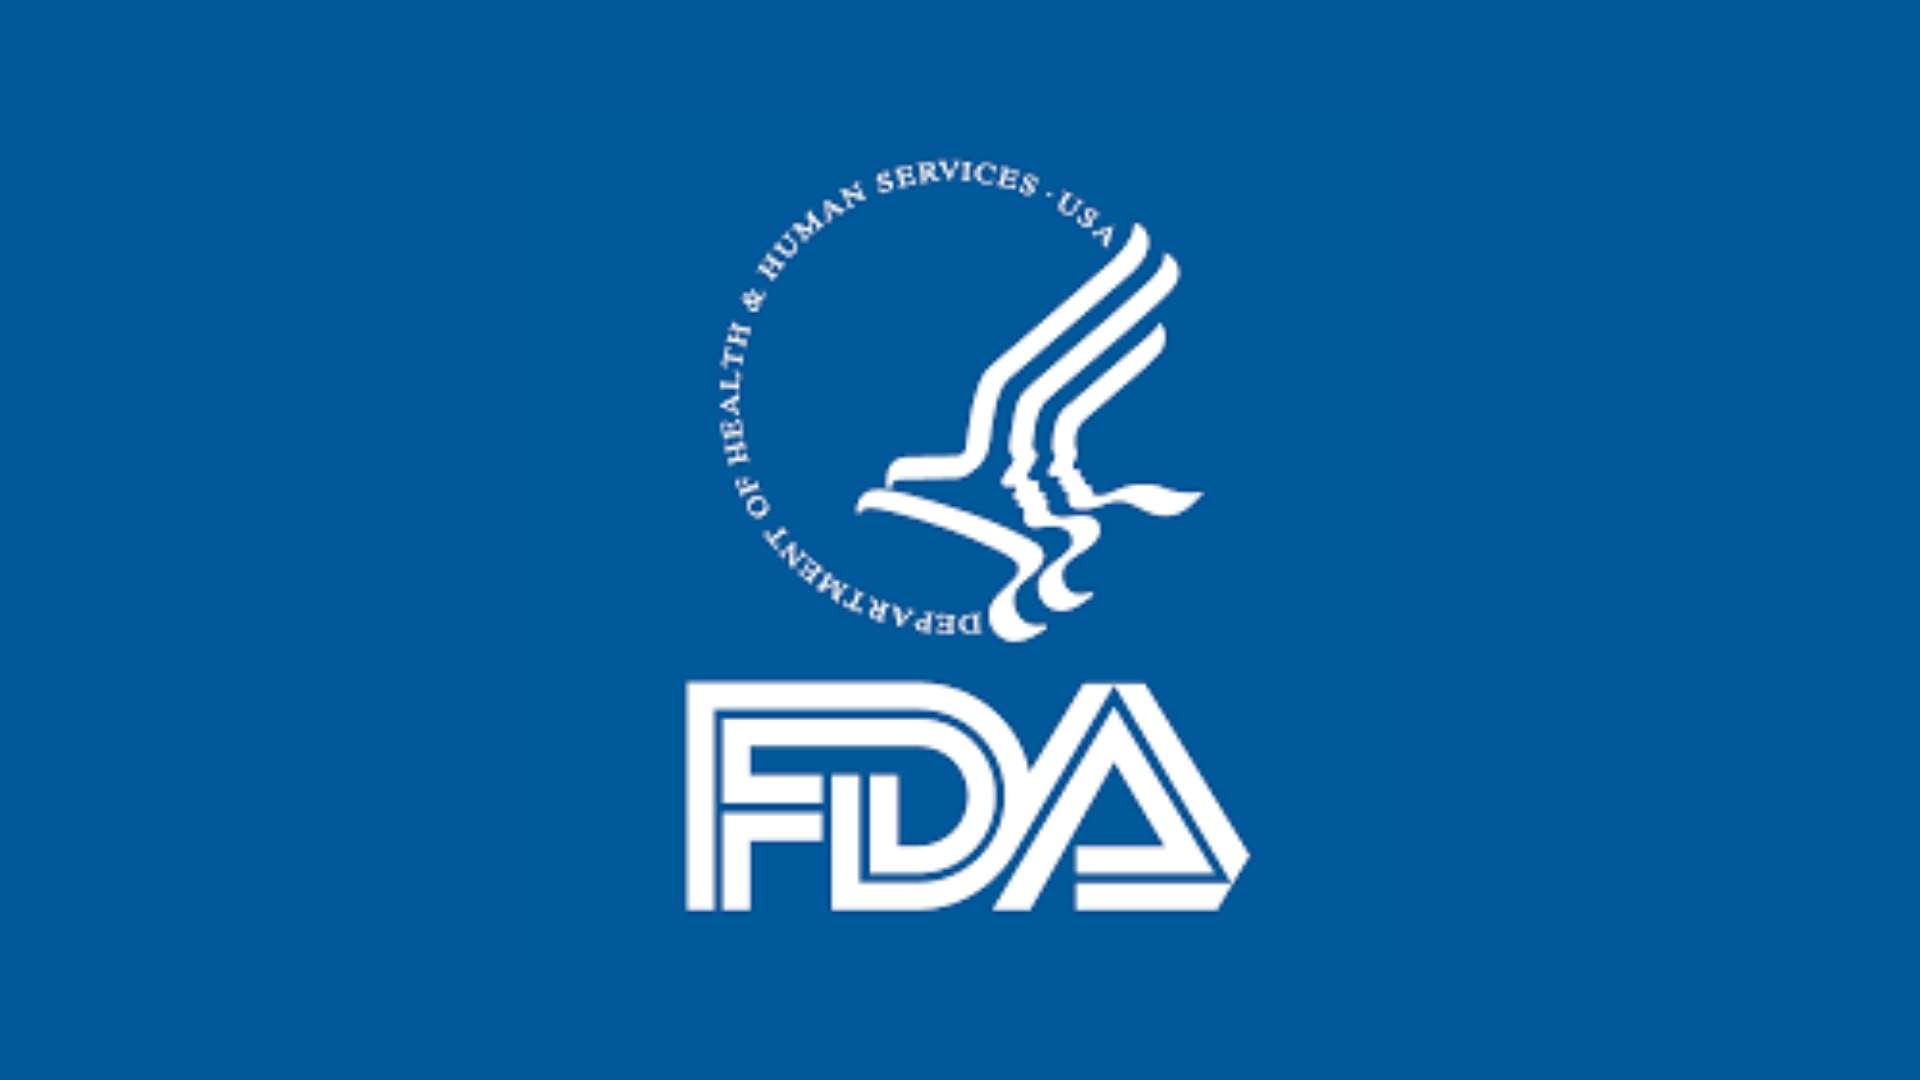 FDA juhendi kavand PBM-seadmete kohta: predikaatide võrdlus ja märgistamine